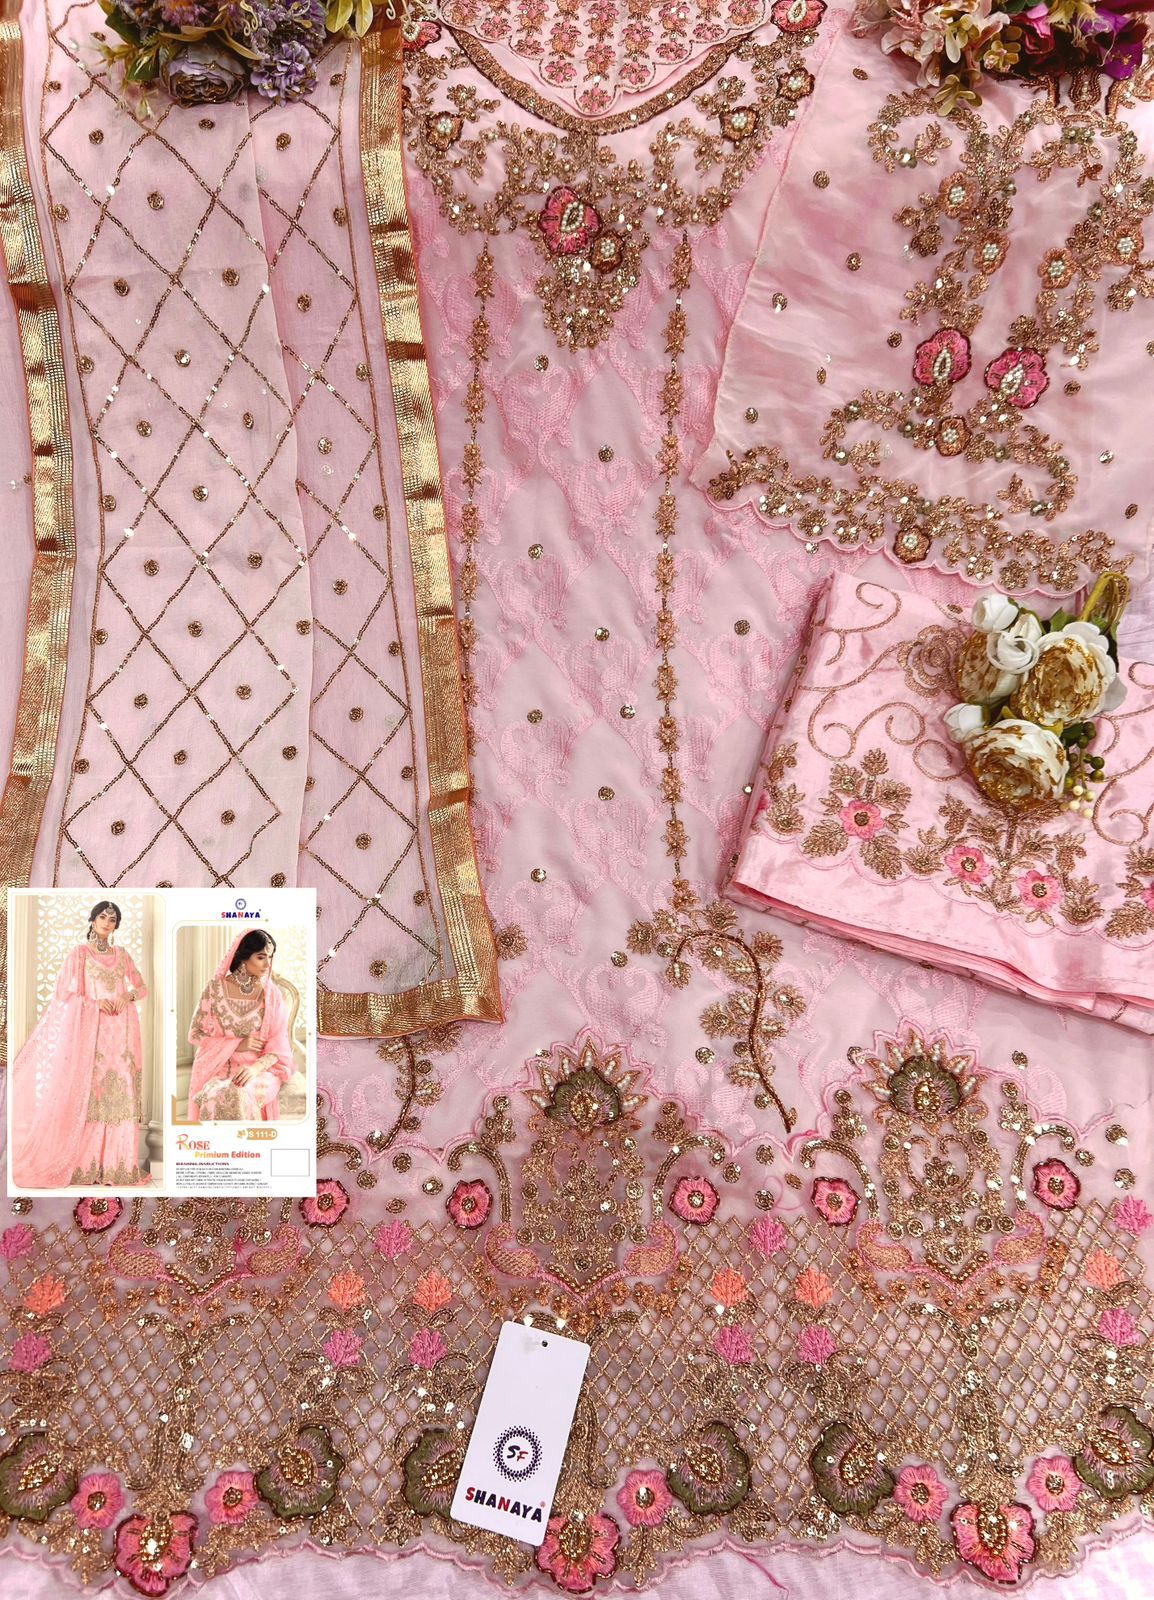 Shanaya Fashion Rose Premium Edition S-111-D